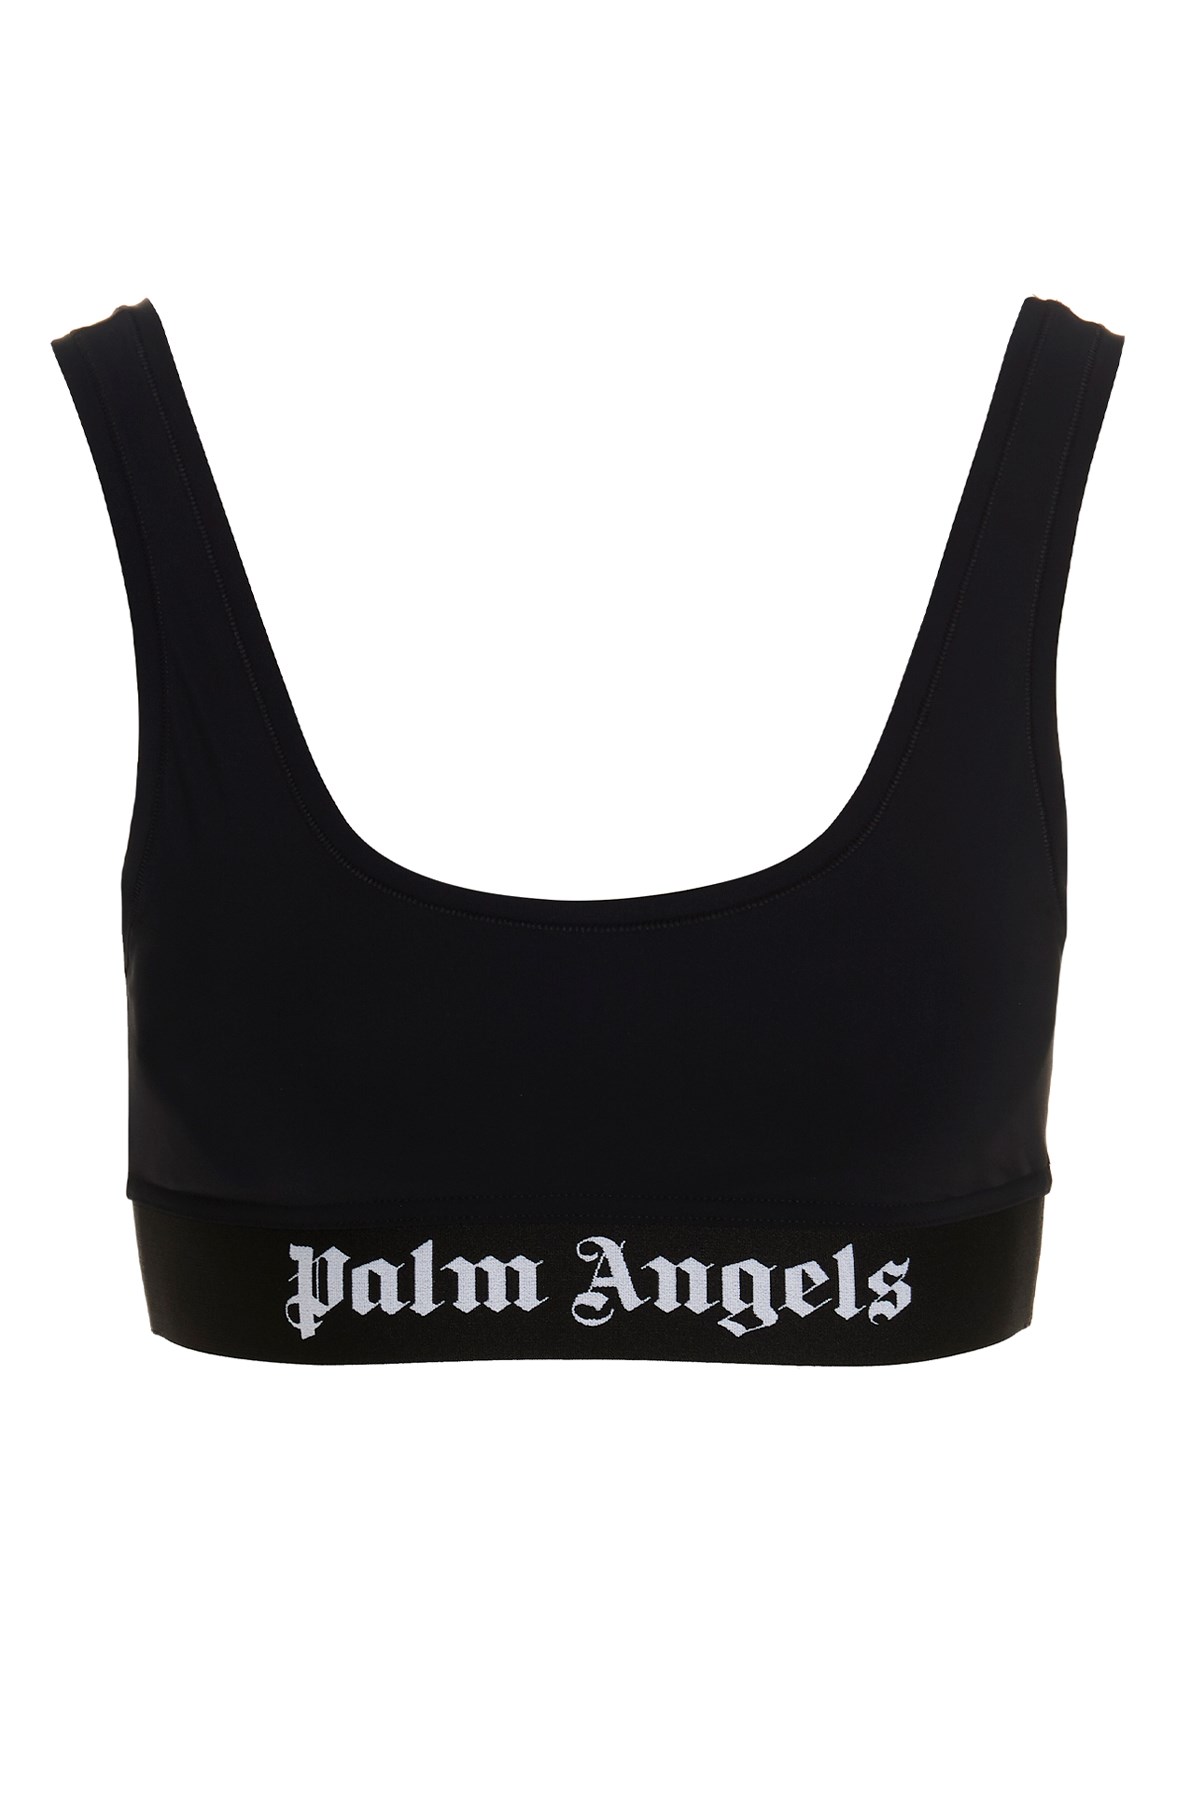 PALM ANGELS 'Classic Logo’ Sporty Bra